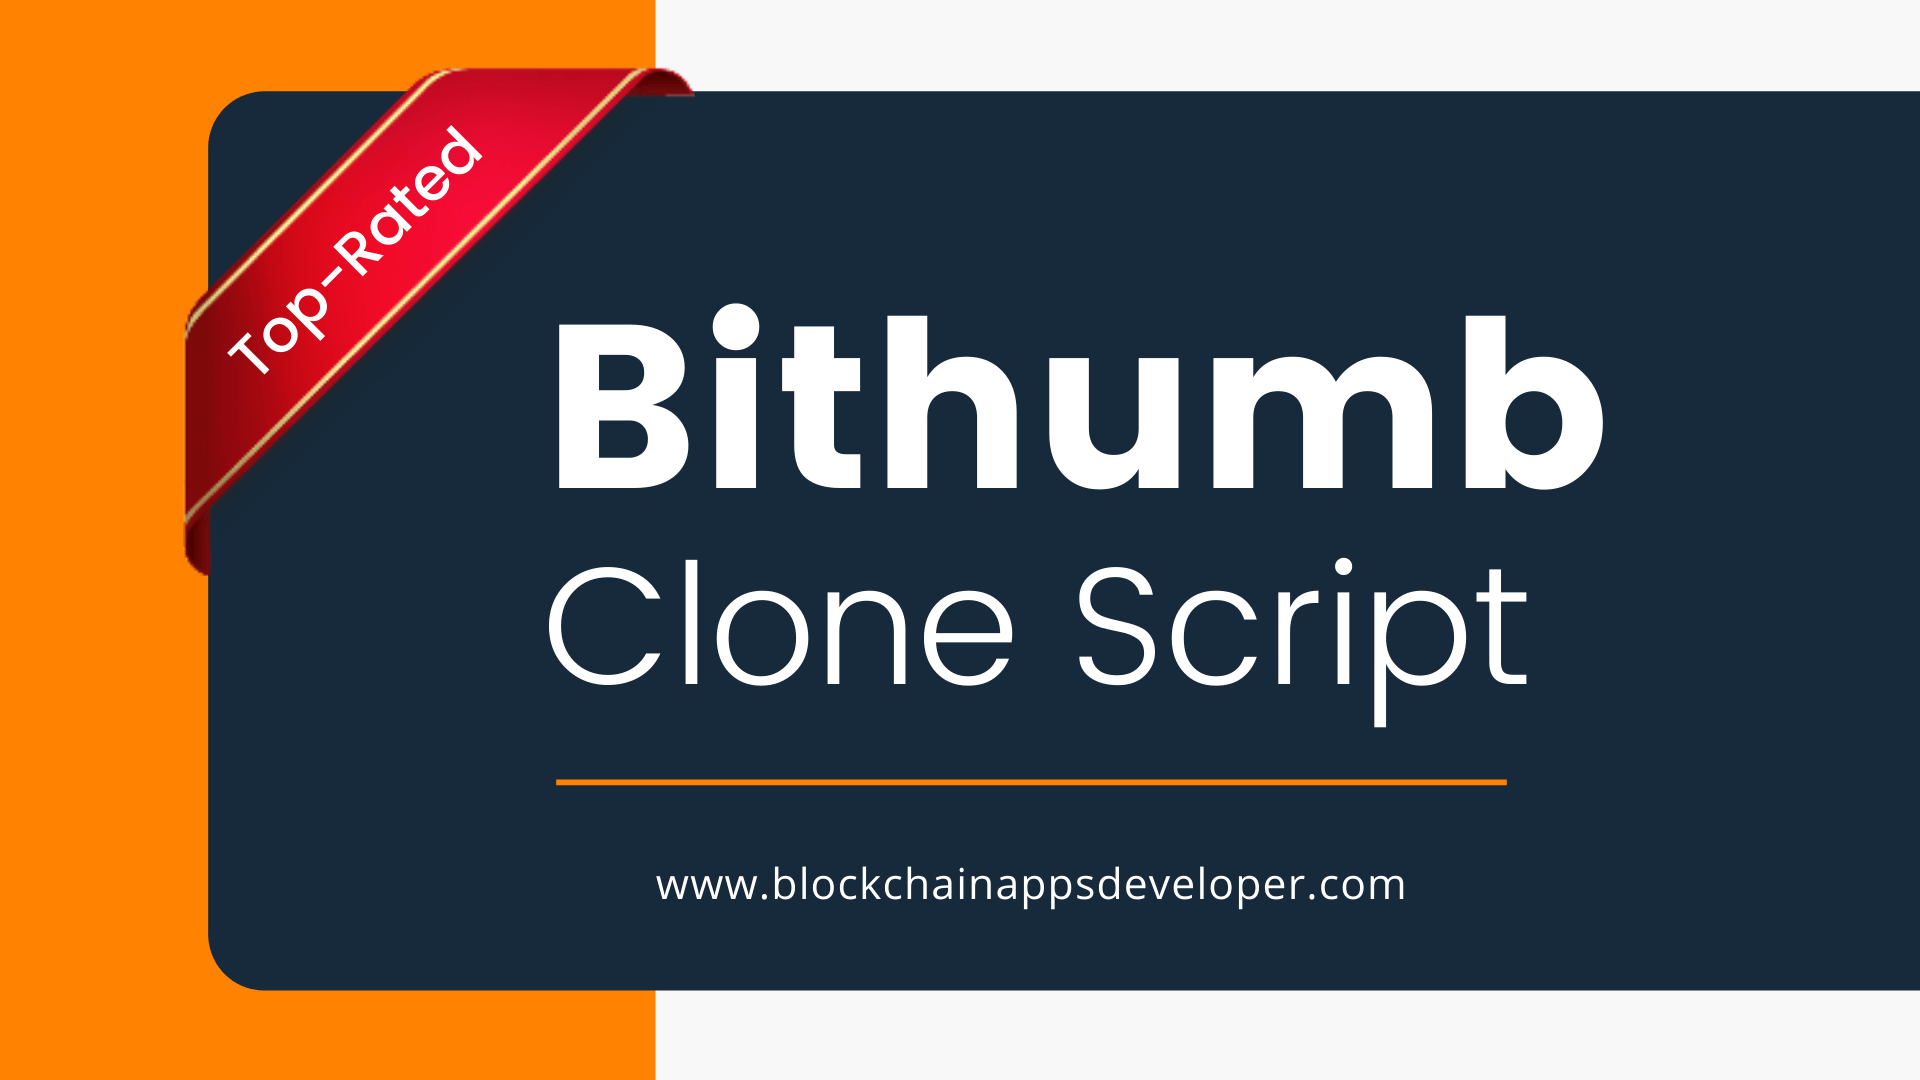 Bithumb Clone Script To Start Cryptocurrency Exchange Like Bithumb